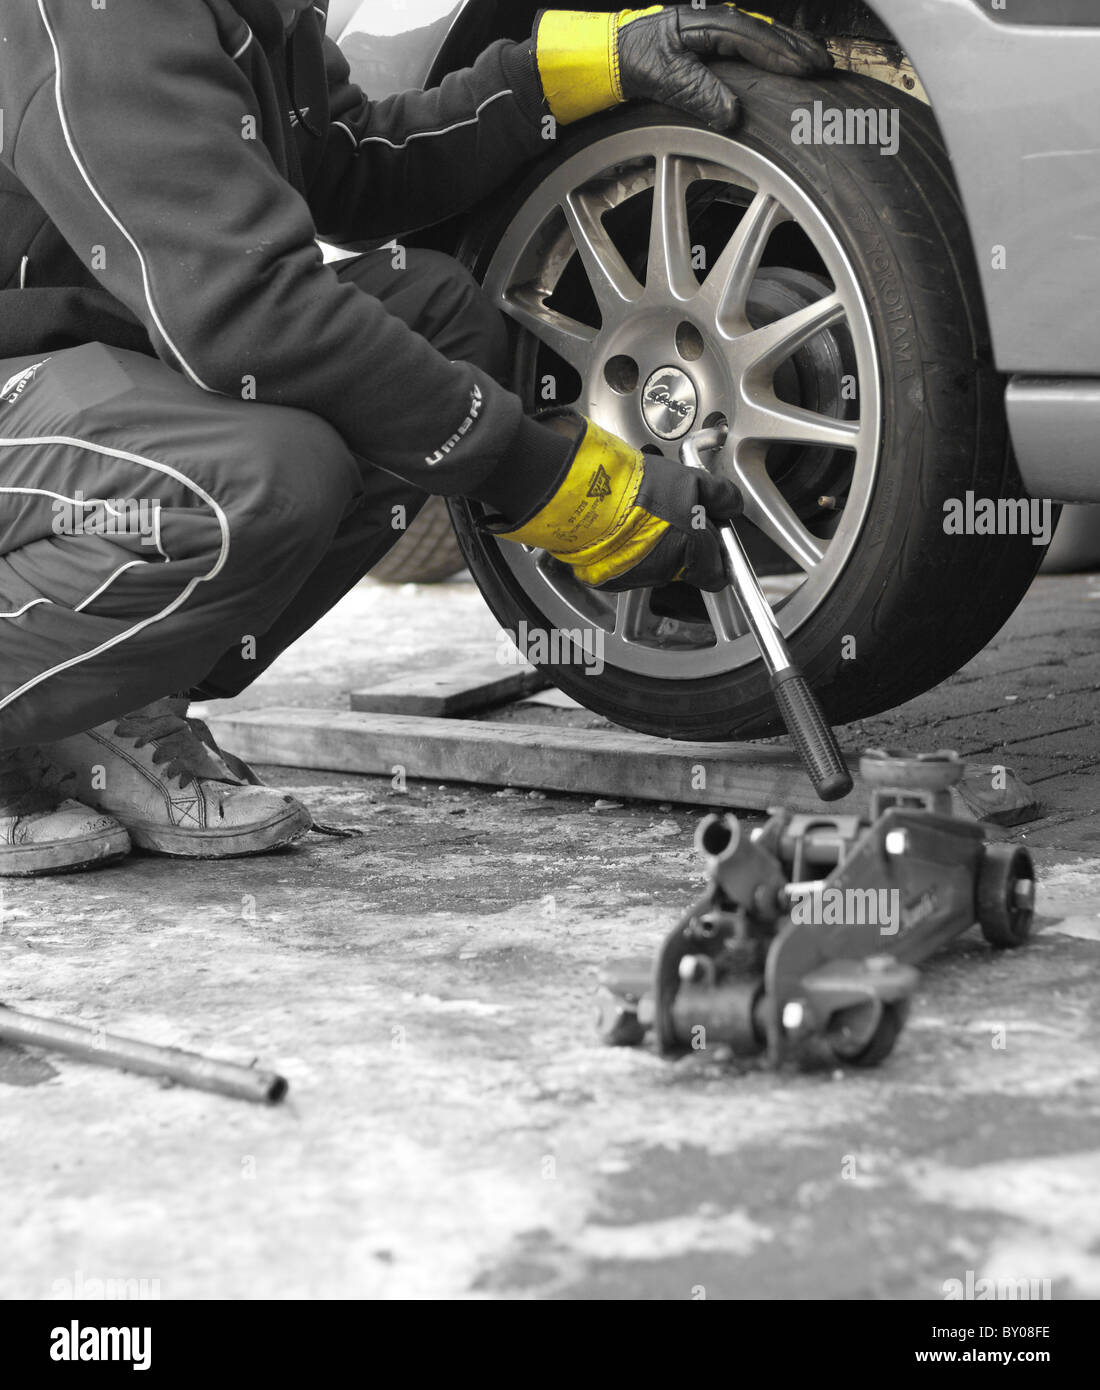 Ein Mechaniker die Radmuttern mit einem Schraubenschlüssel abschrauben, das Rad von einem Auto, Rigger Handschuhe zum Schutz zu entfernen. Stockfoto